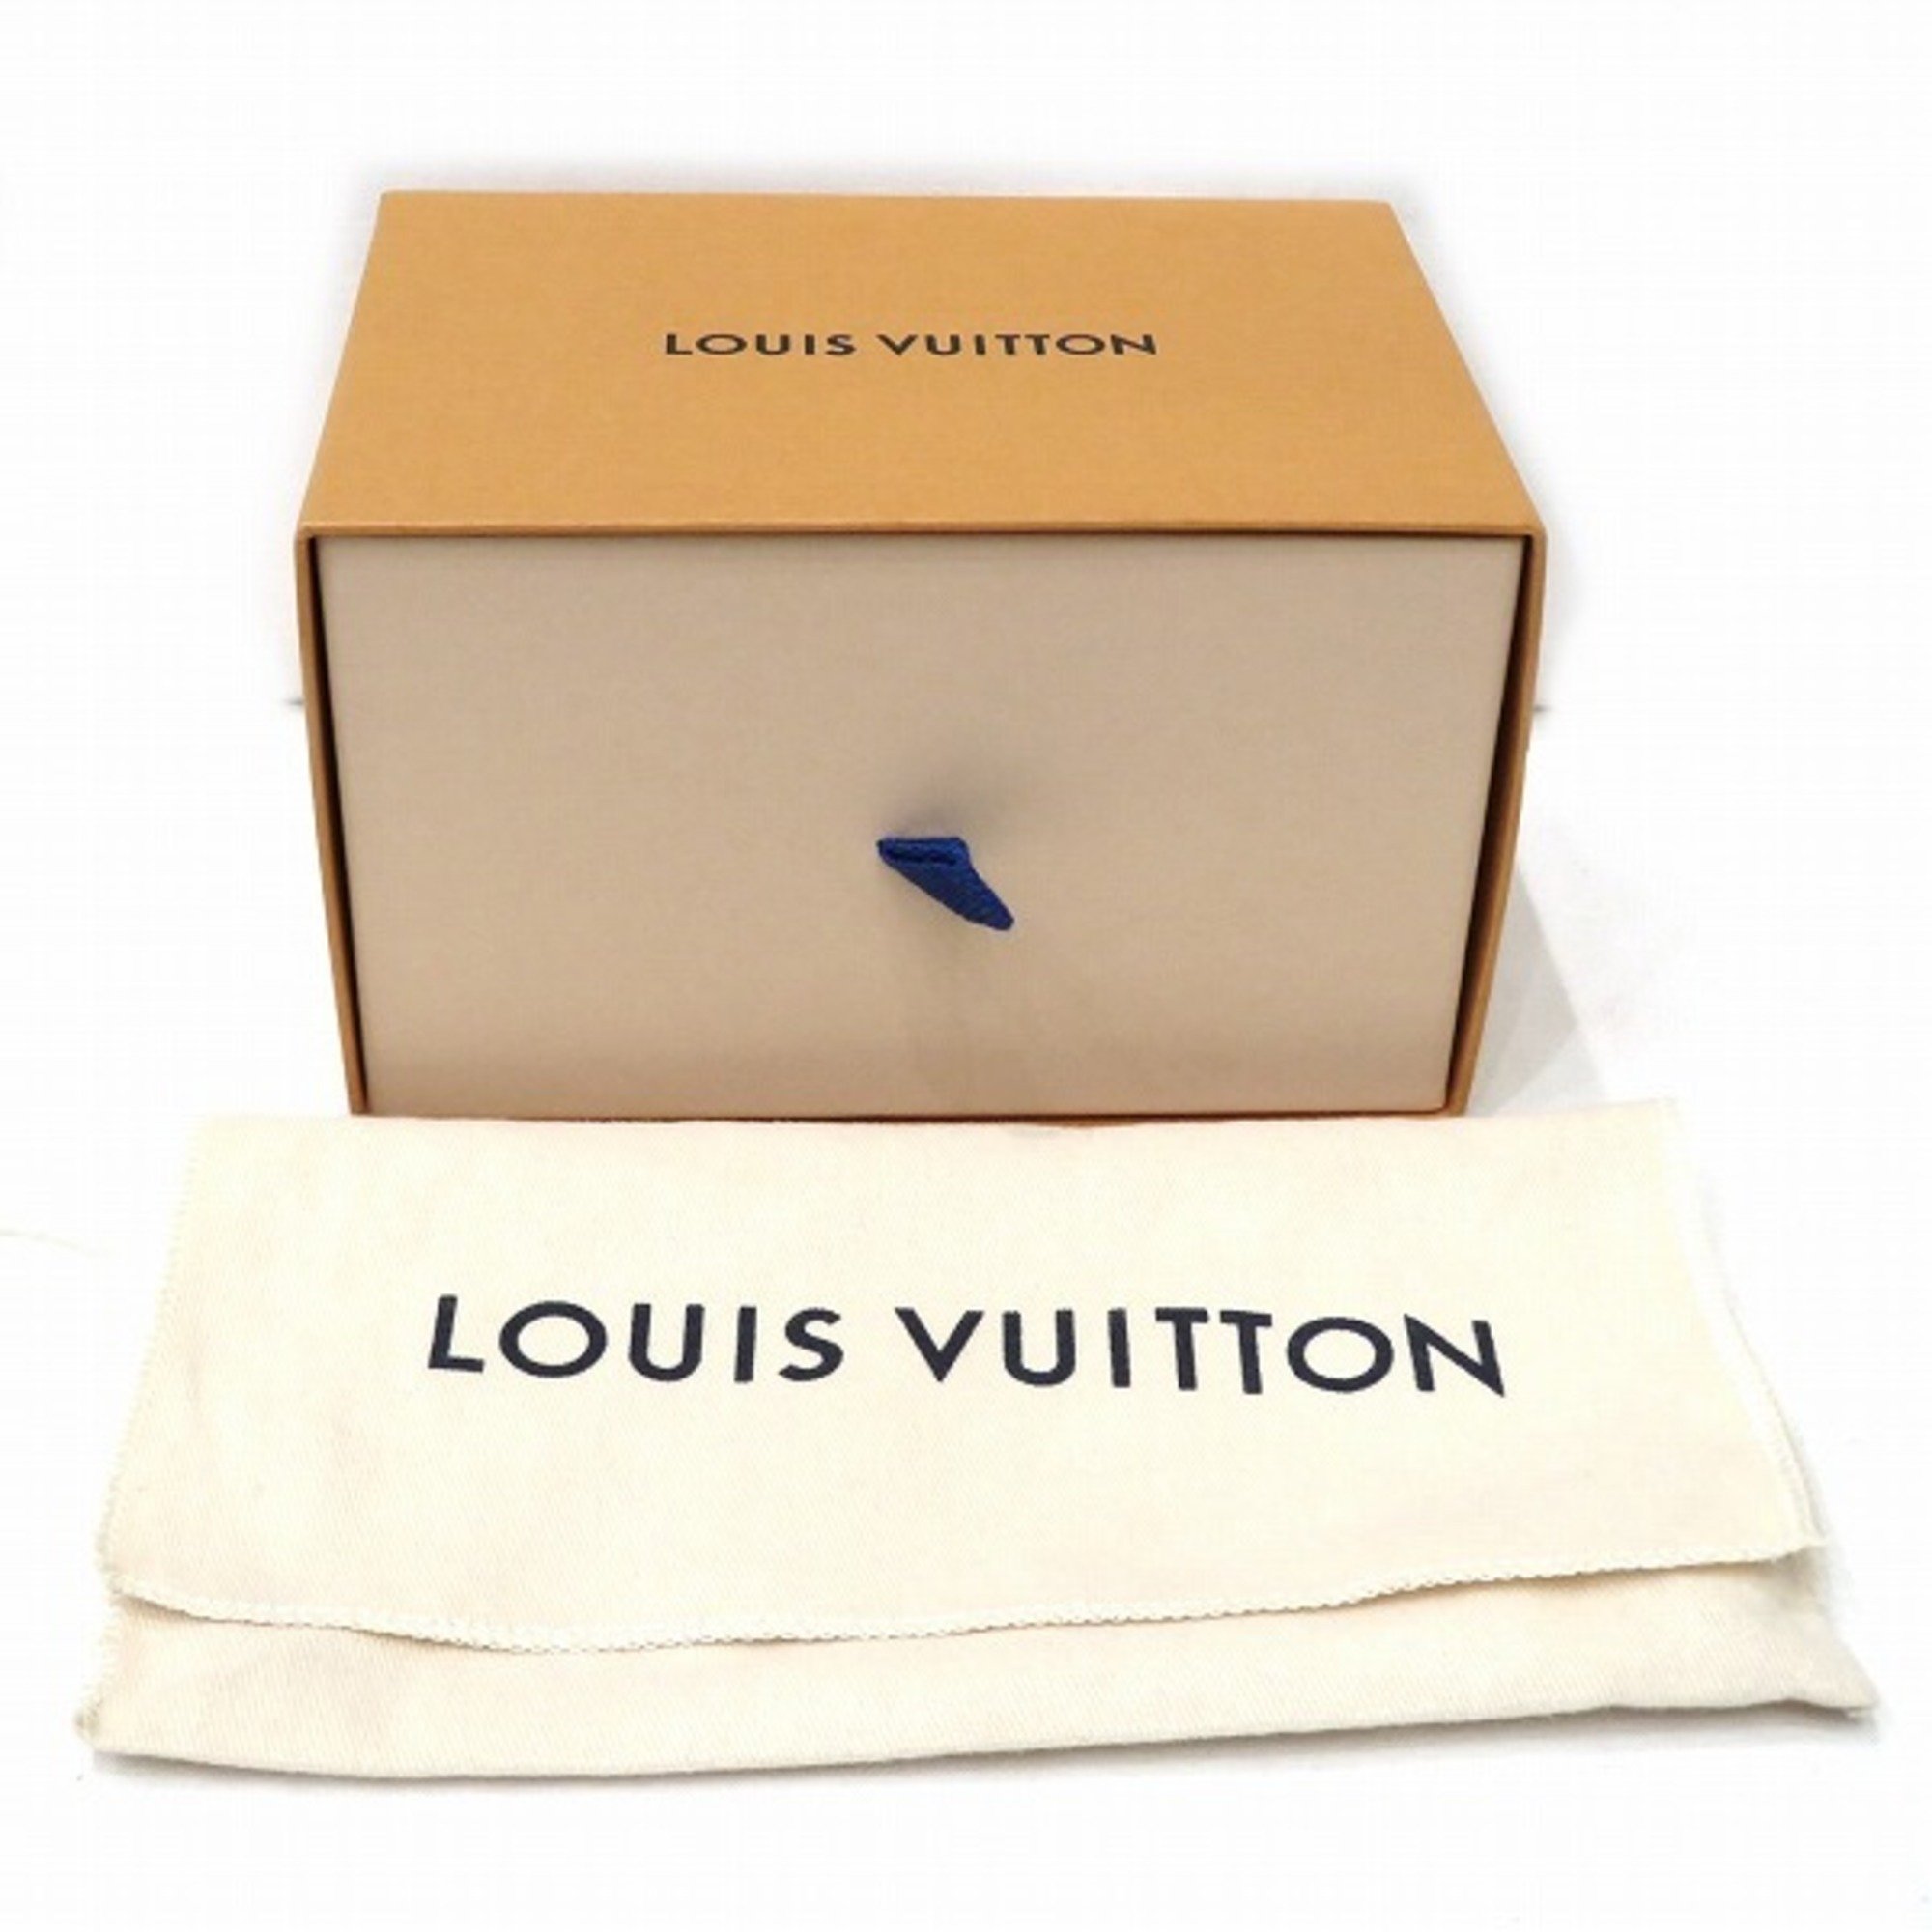 Louis Vuitton Monogram Travel Case 100ML LS0153 Small Items Pouch Men's Women's